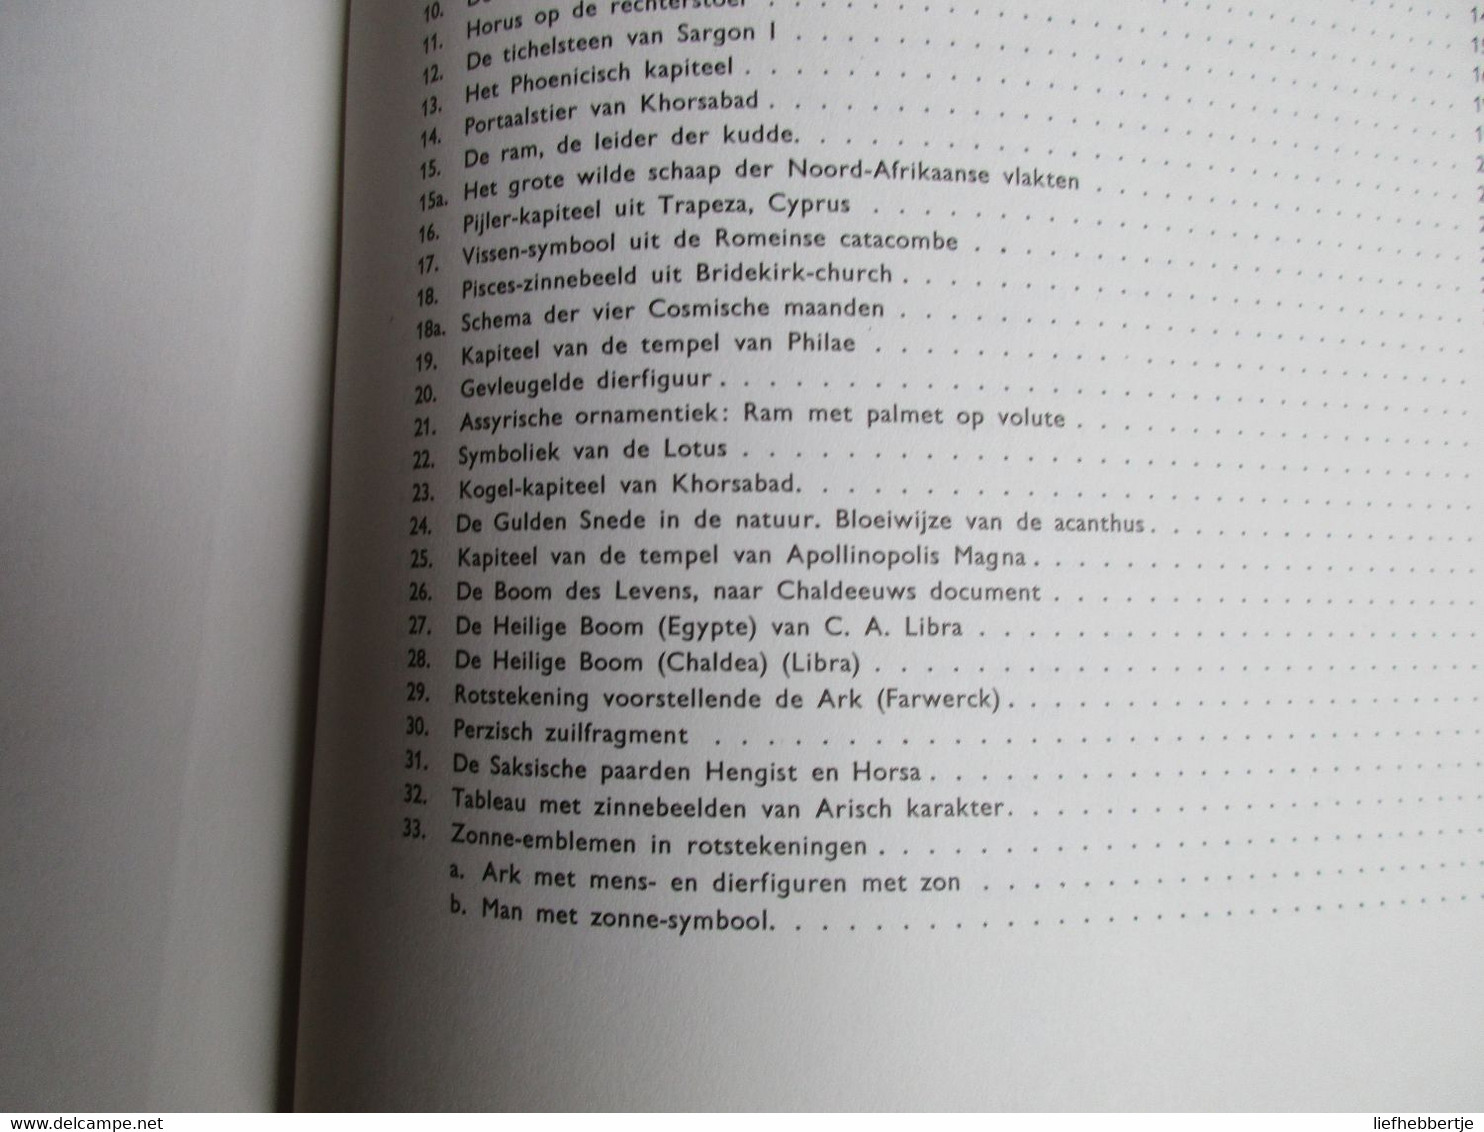 Inleiding tot de kennis van symbolische vormen en van de mystiek der bouwkunst - door Jan De Boer - 1981